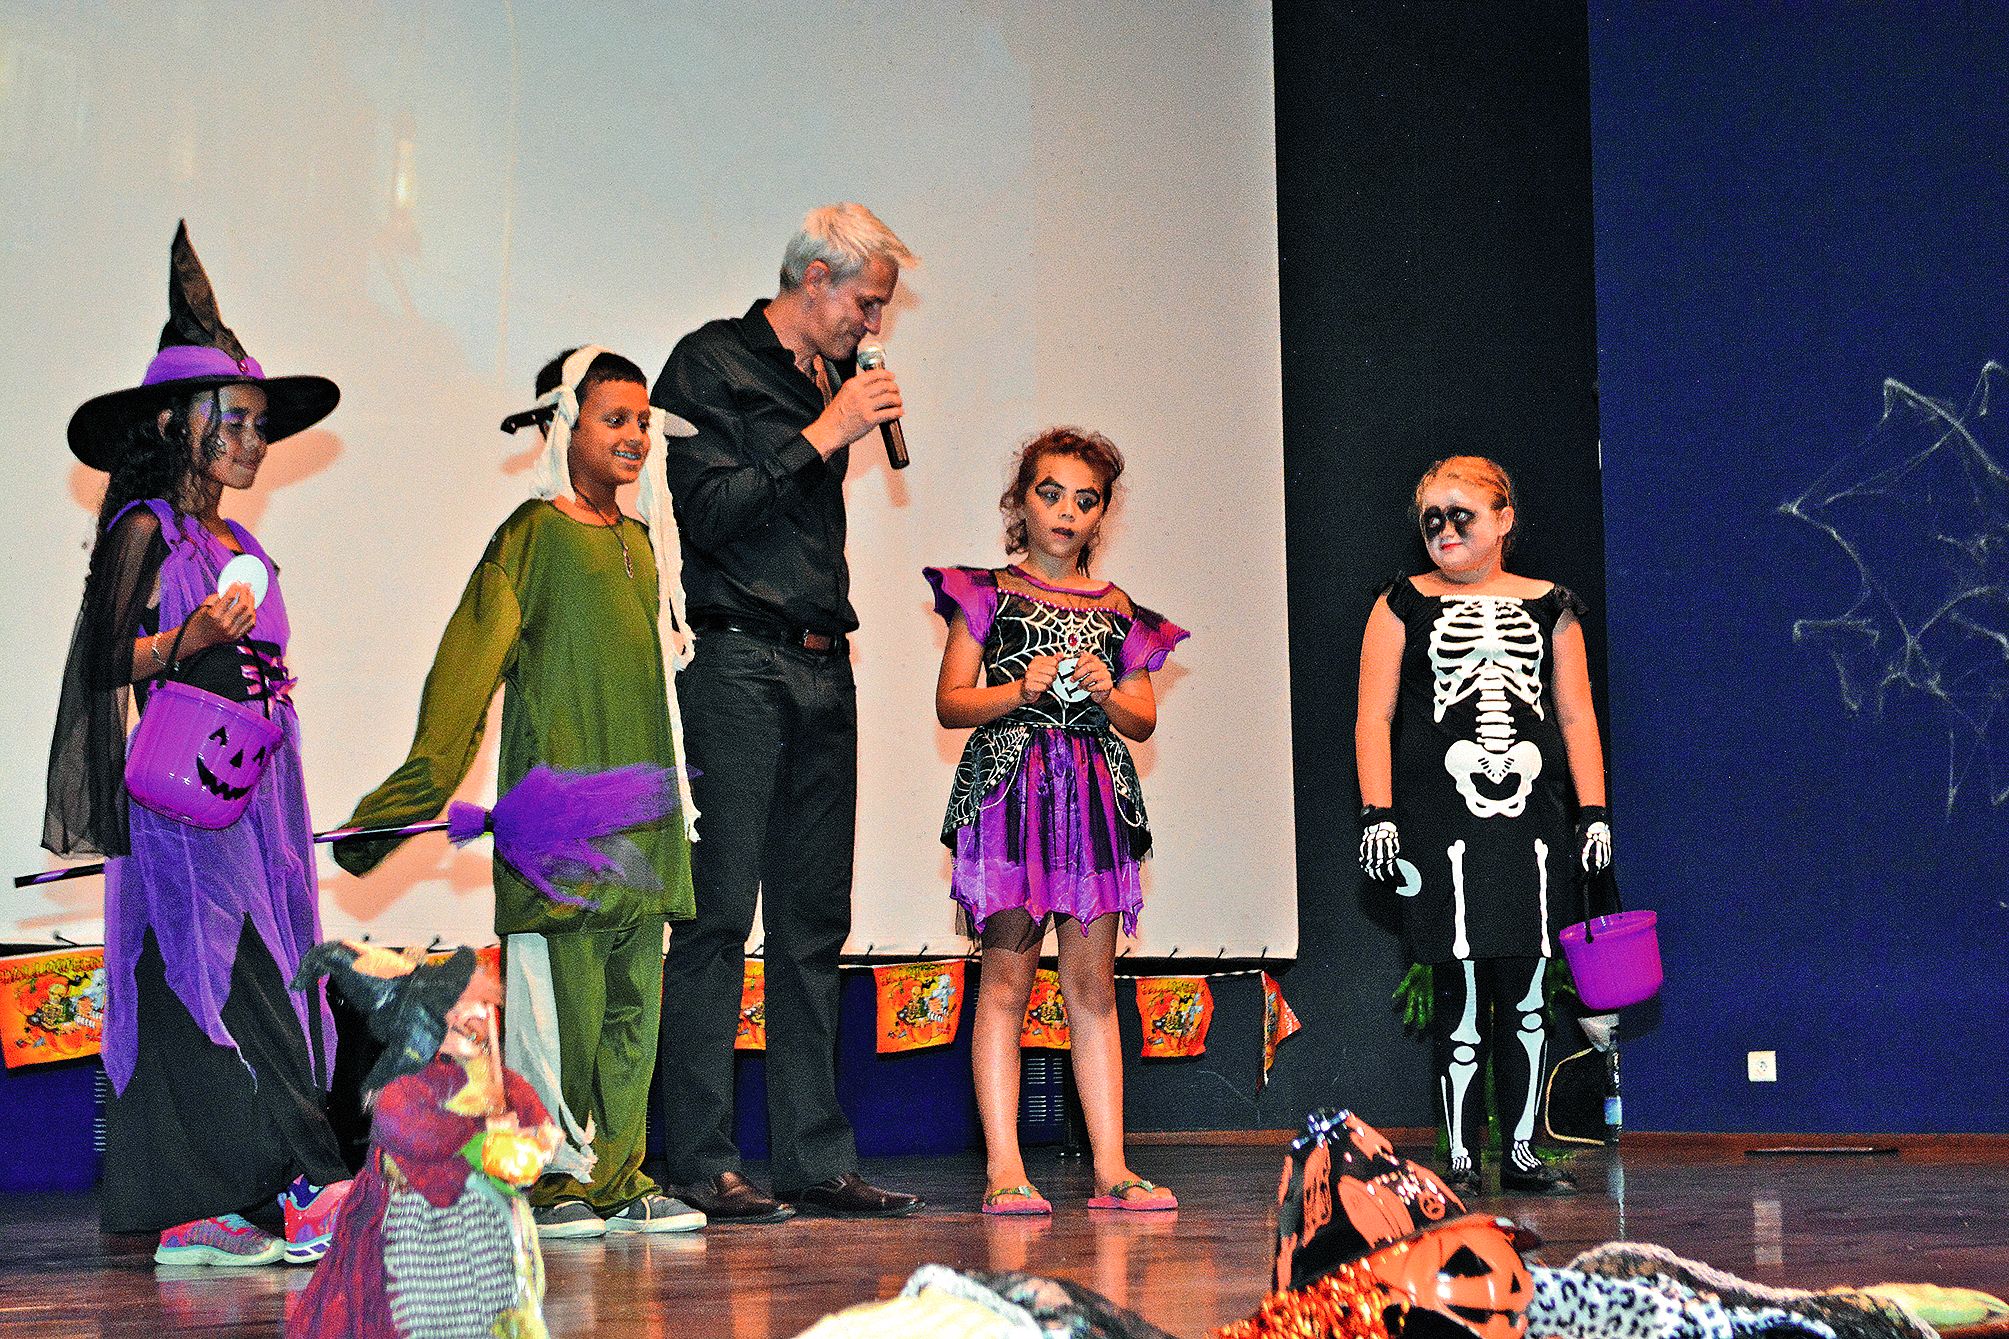 Quarante-six enfants se sont inscrits pour participer au concours de déguisement. Par groupe de 4 à 5, les petits monstres, sorcières et autres horribles personnages sont montés sur l’estrade avec Stanley, l’animateur du jour.